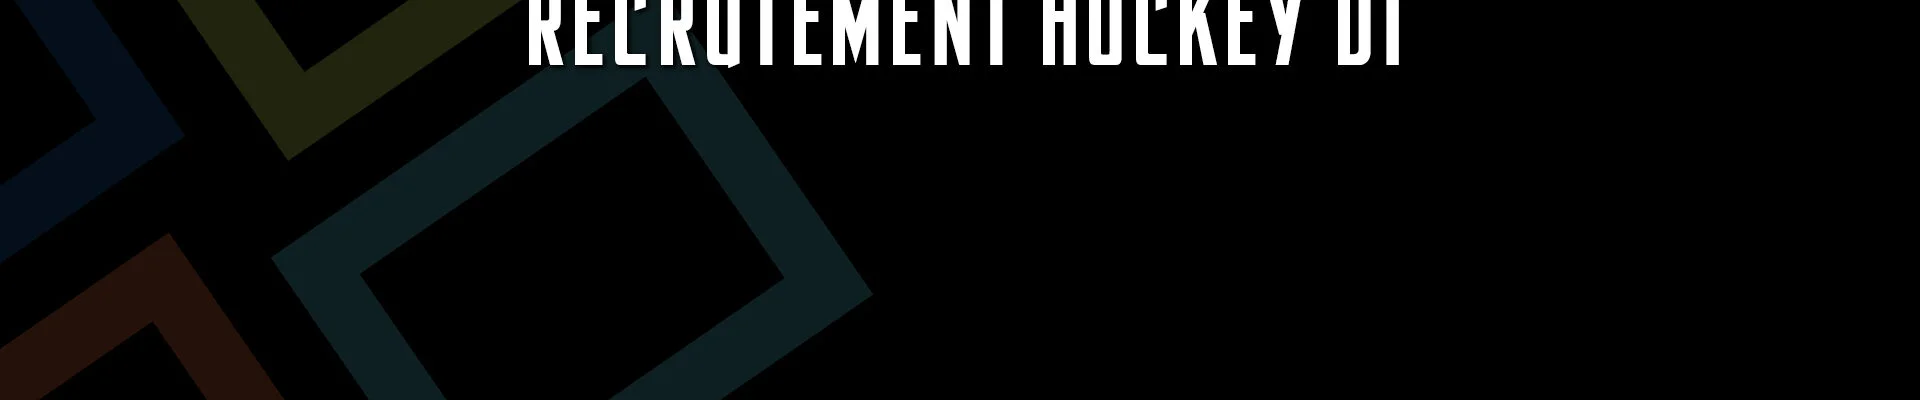 Hockey D1 – 5 joueurs signent avant la fin de la période de recrutement